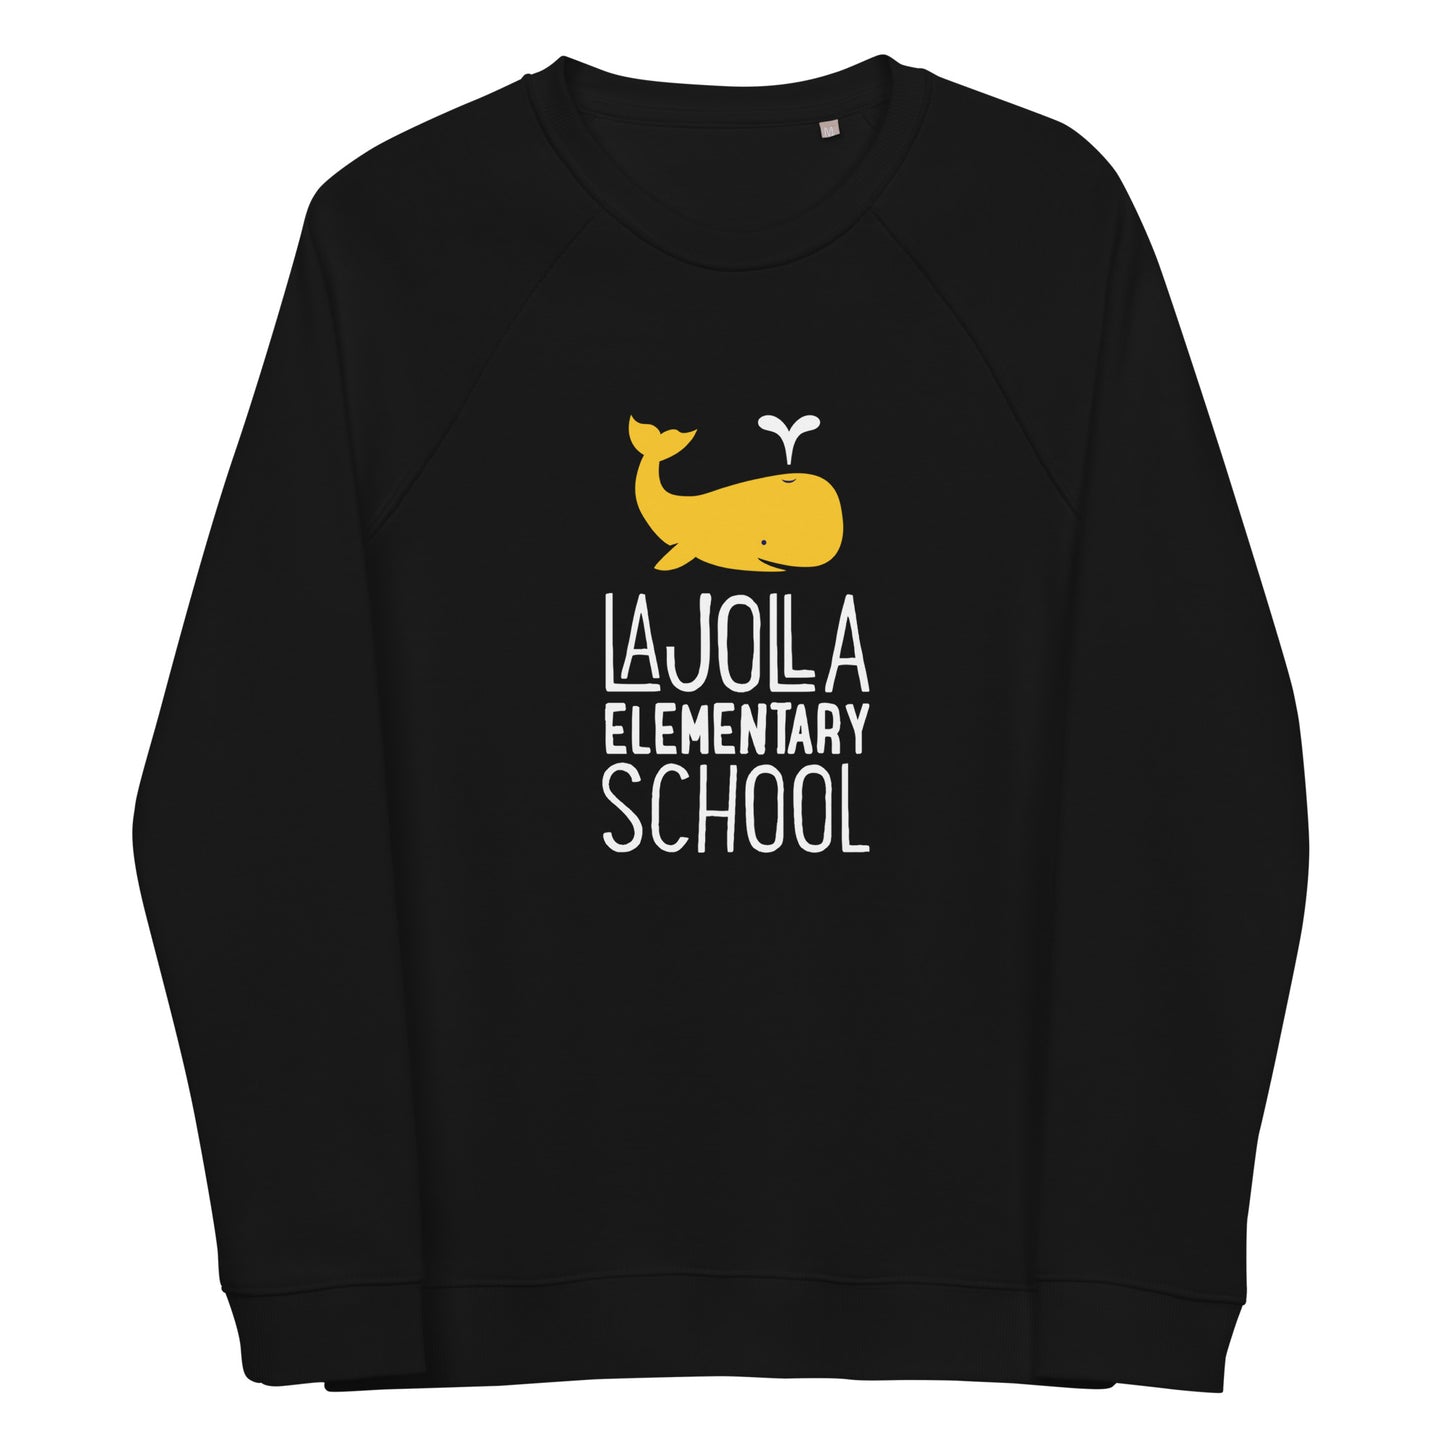 Whale Collection: Adult Unisex Organic Raglan Sweatshirt